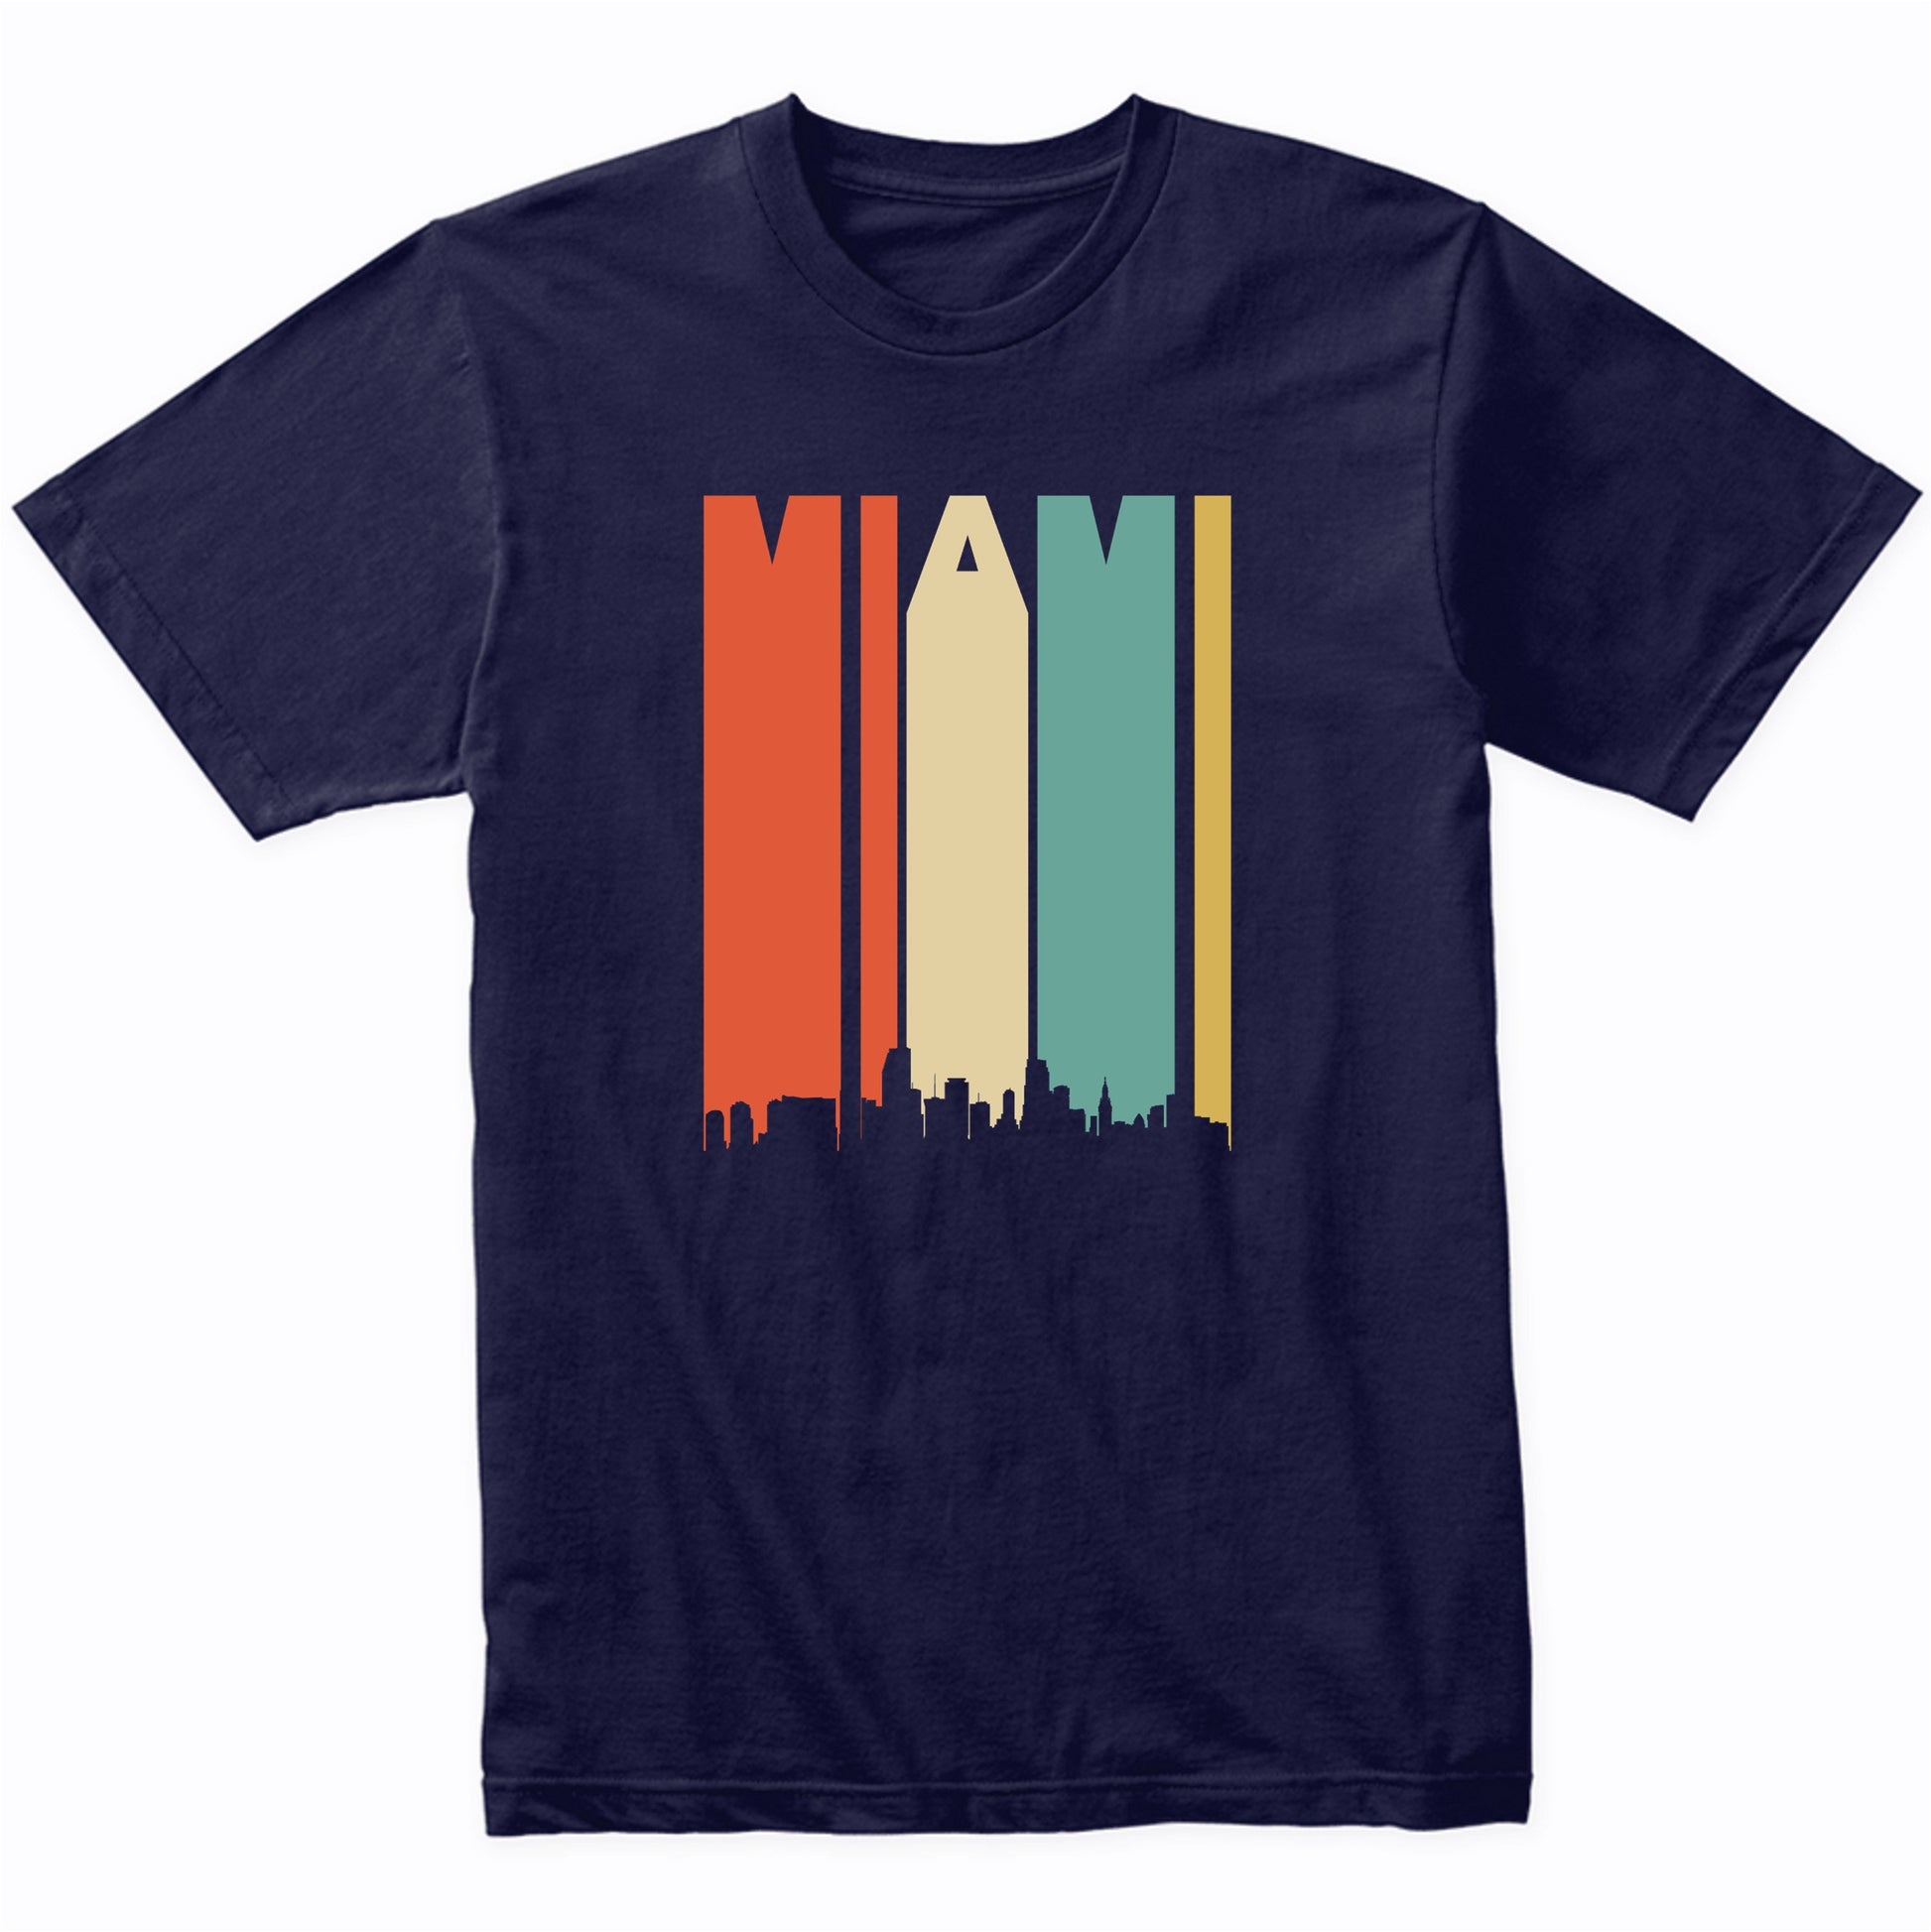 Retro 1970's Miami Florida Cityscape Downtown Skyline Shirt